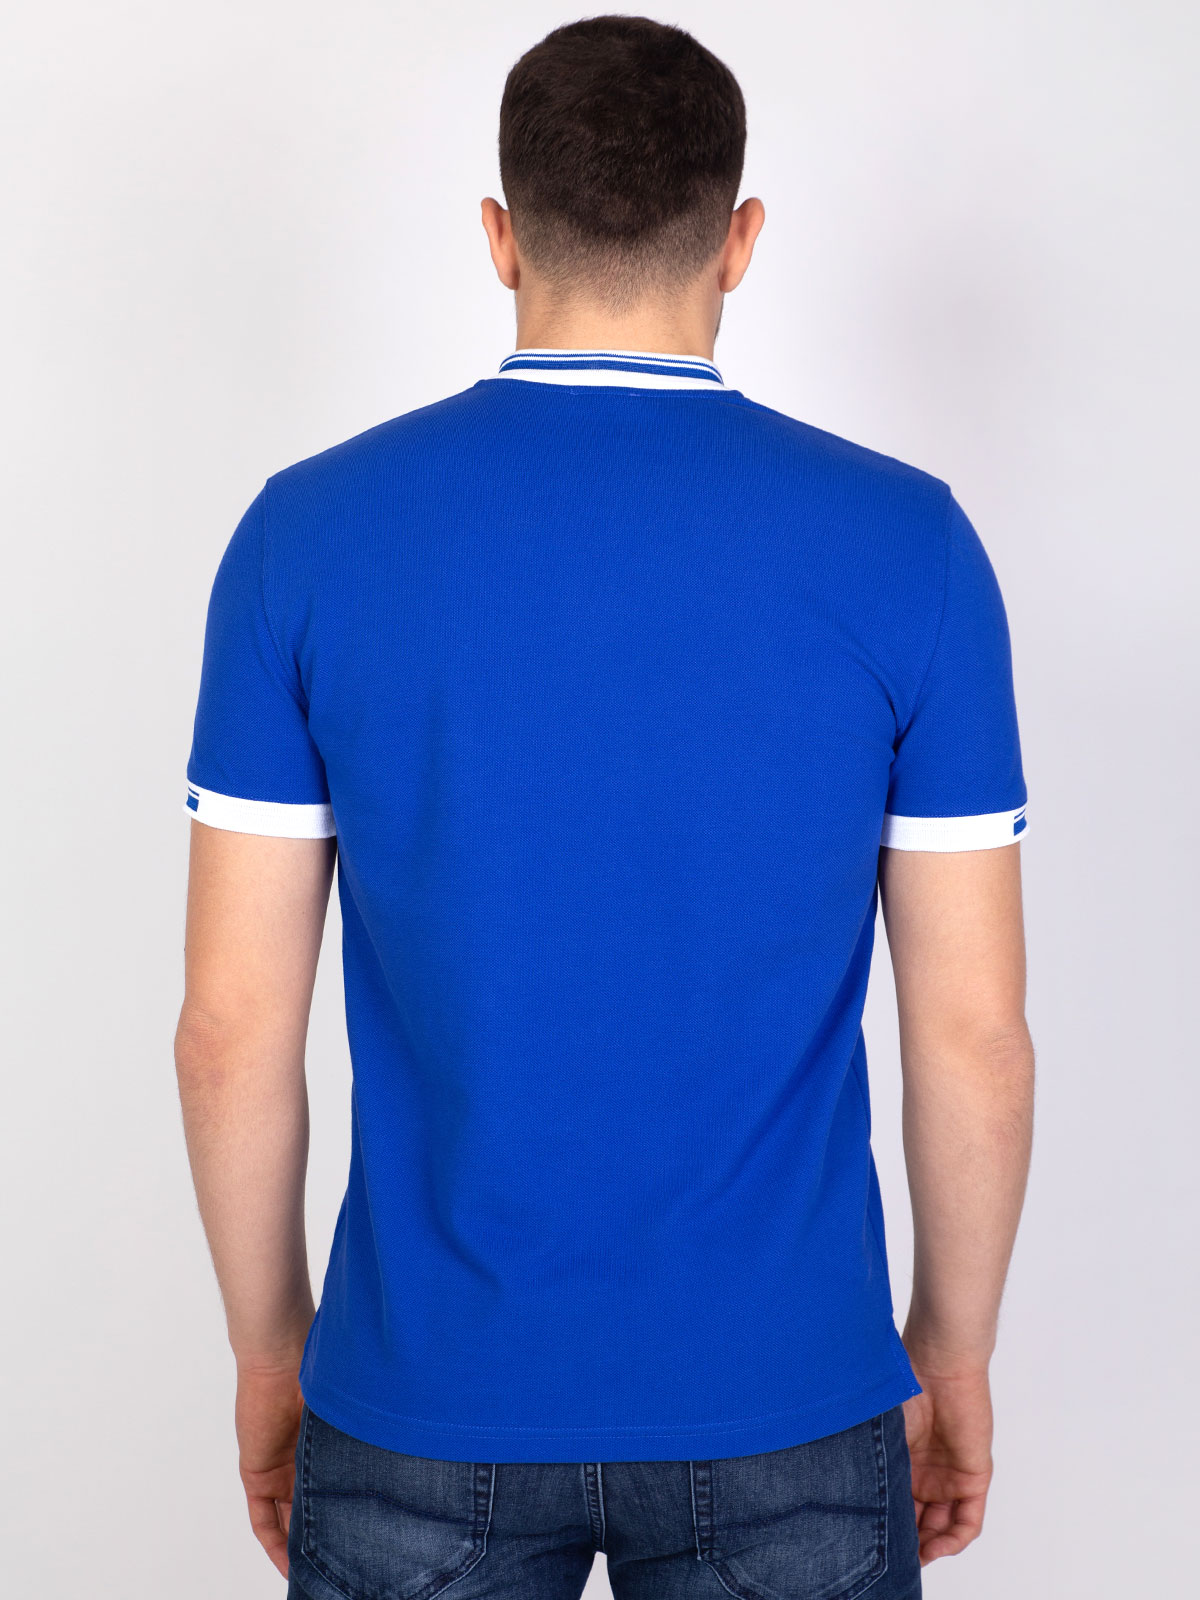 Μπλούζα σε μπλε royal με γιακά σε λευκό - 93398 € 20.25 img4